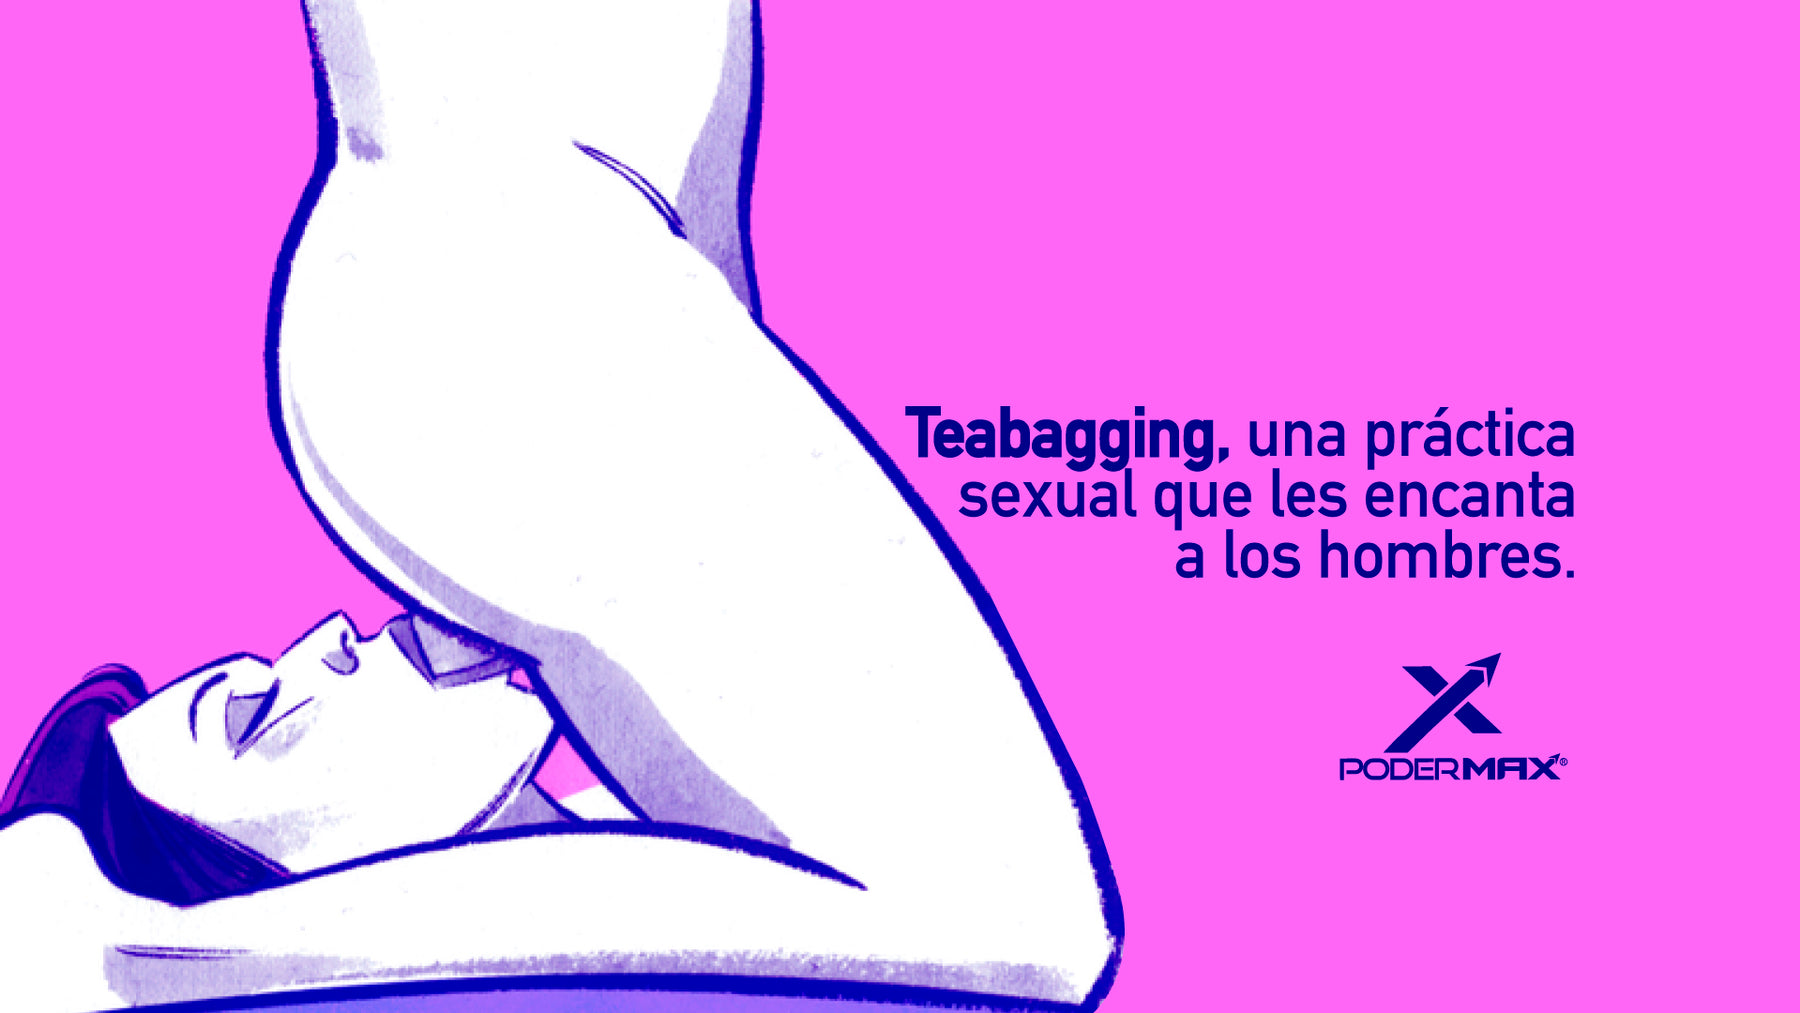 Teabagging, una práctica sexual que les encanta a los hombres.